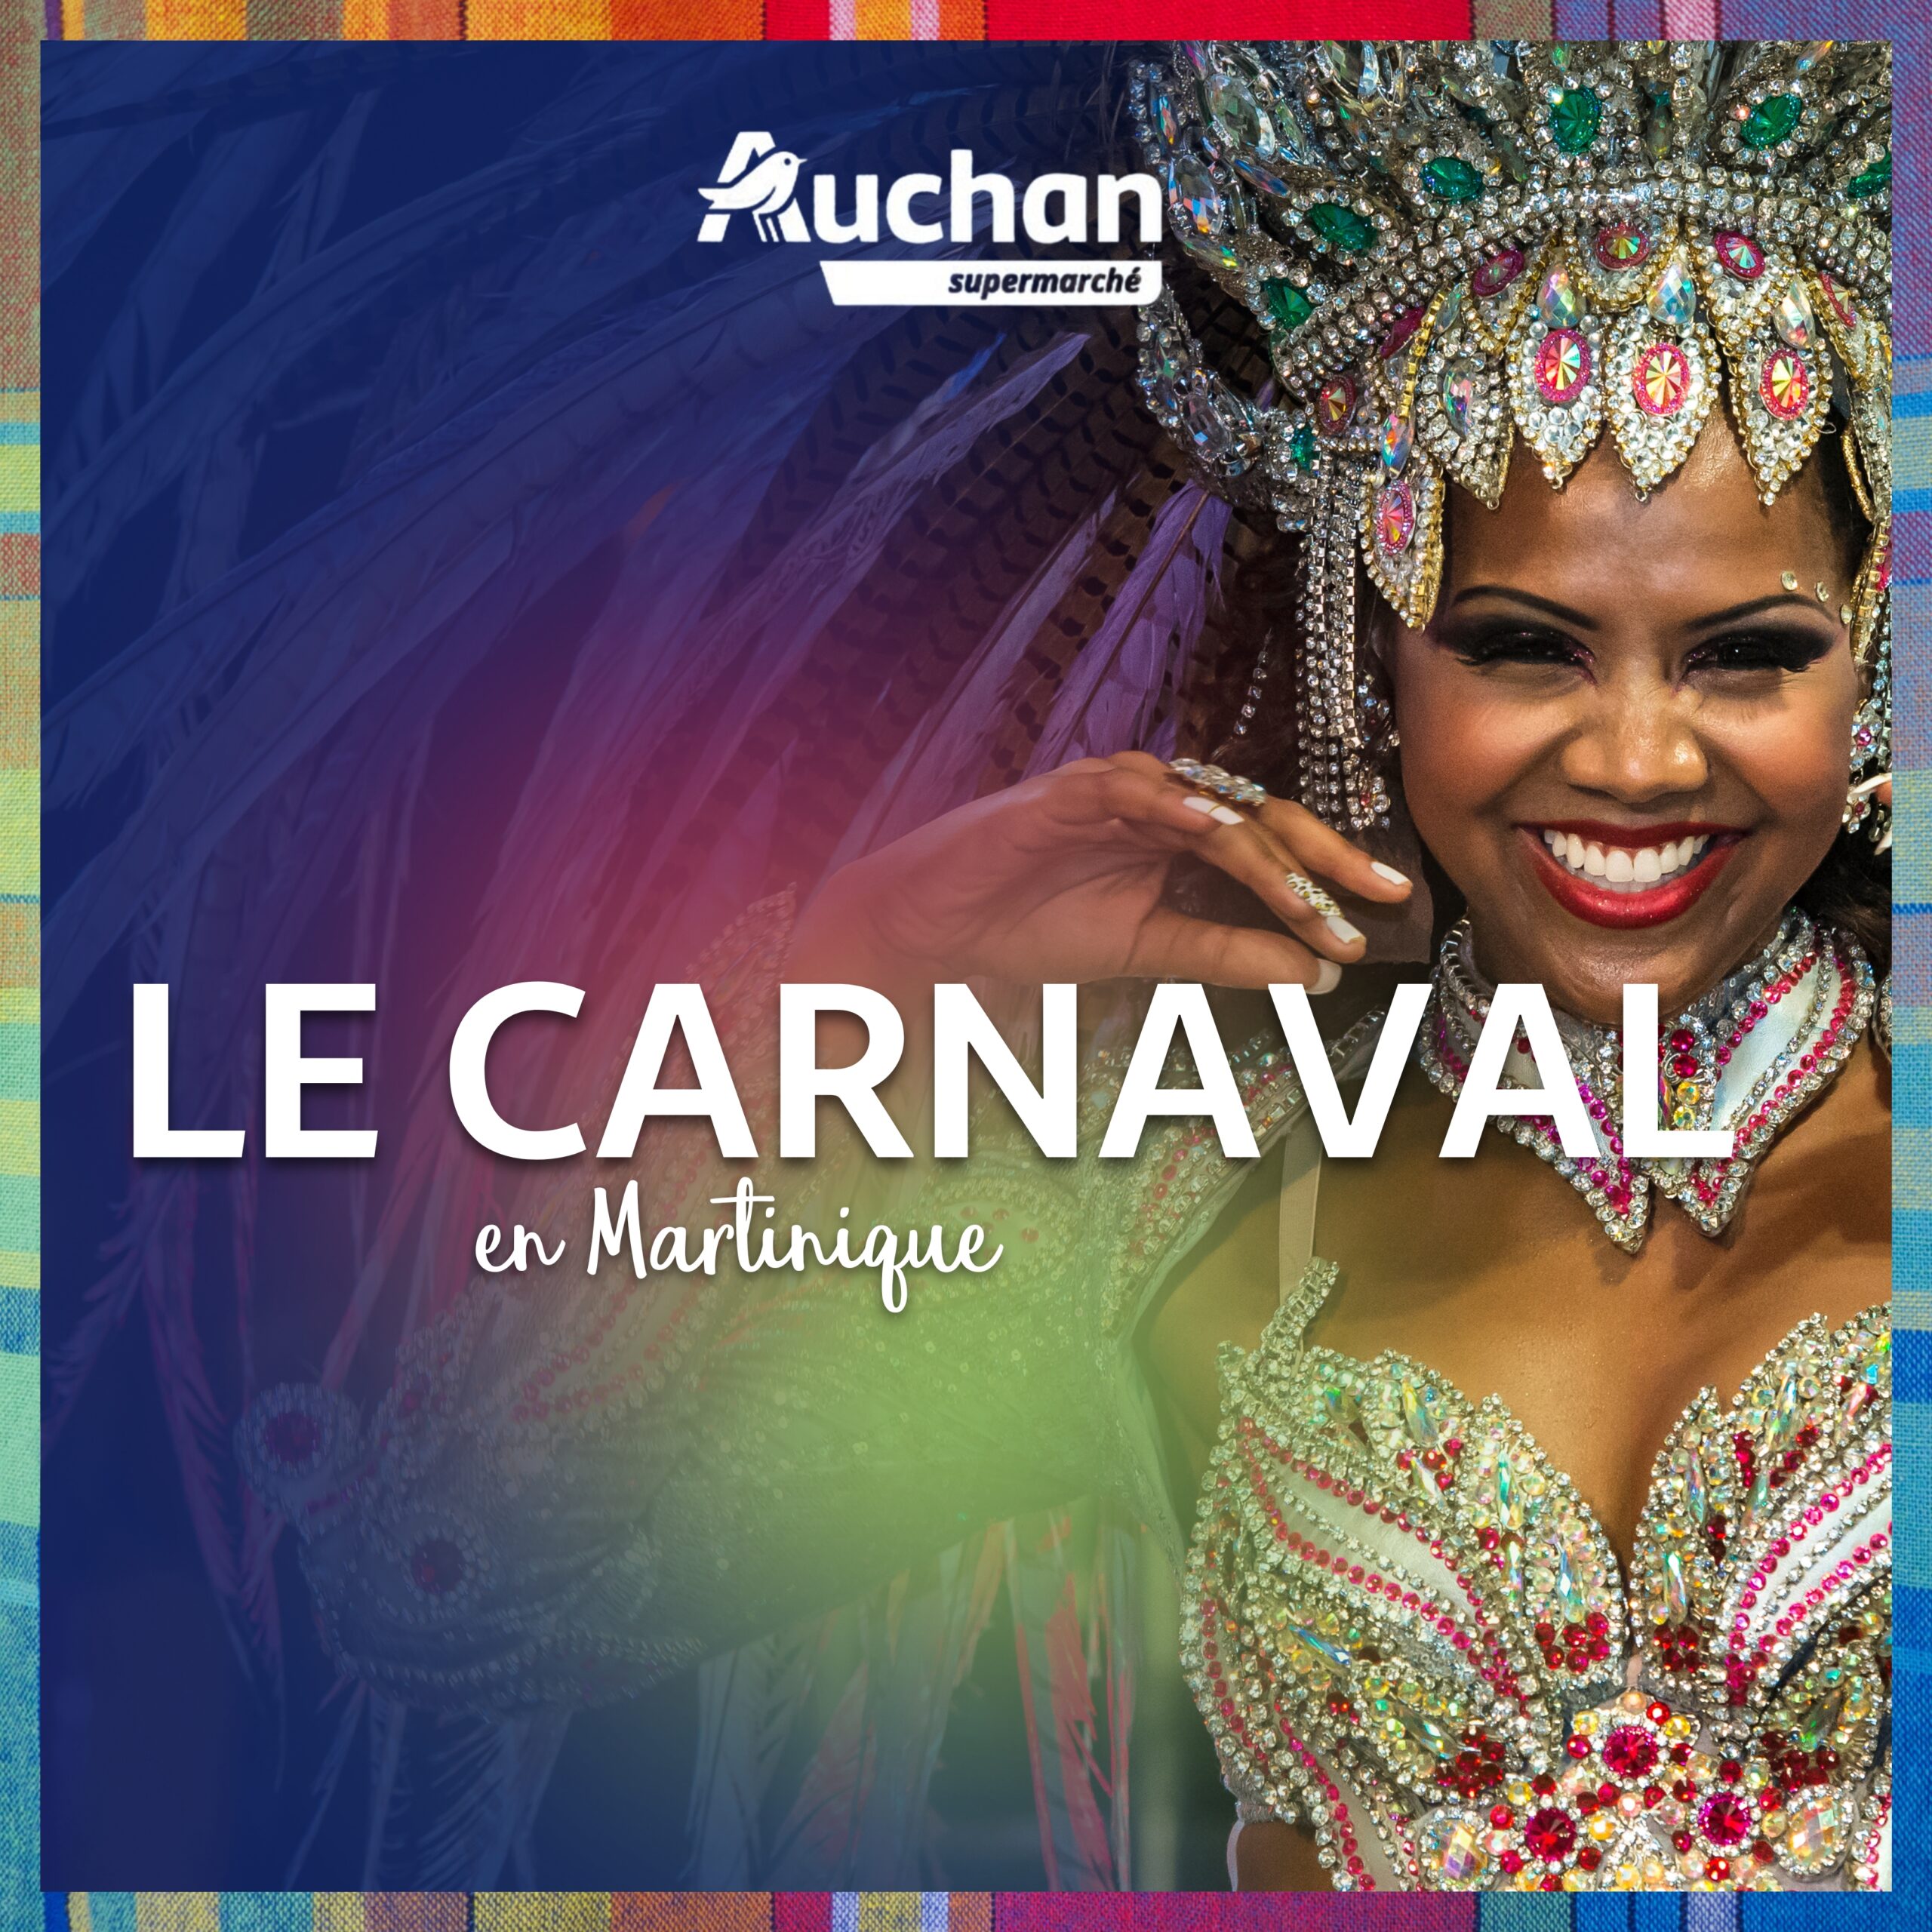 Le carnaval en Martinique : comment se déroulent les festivités ?